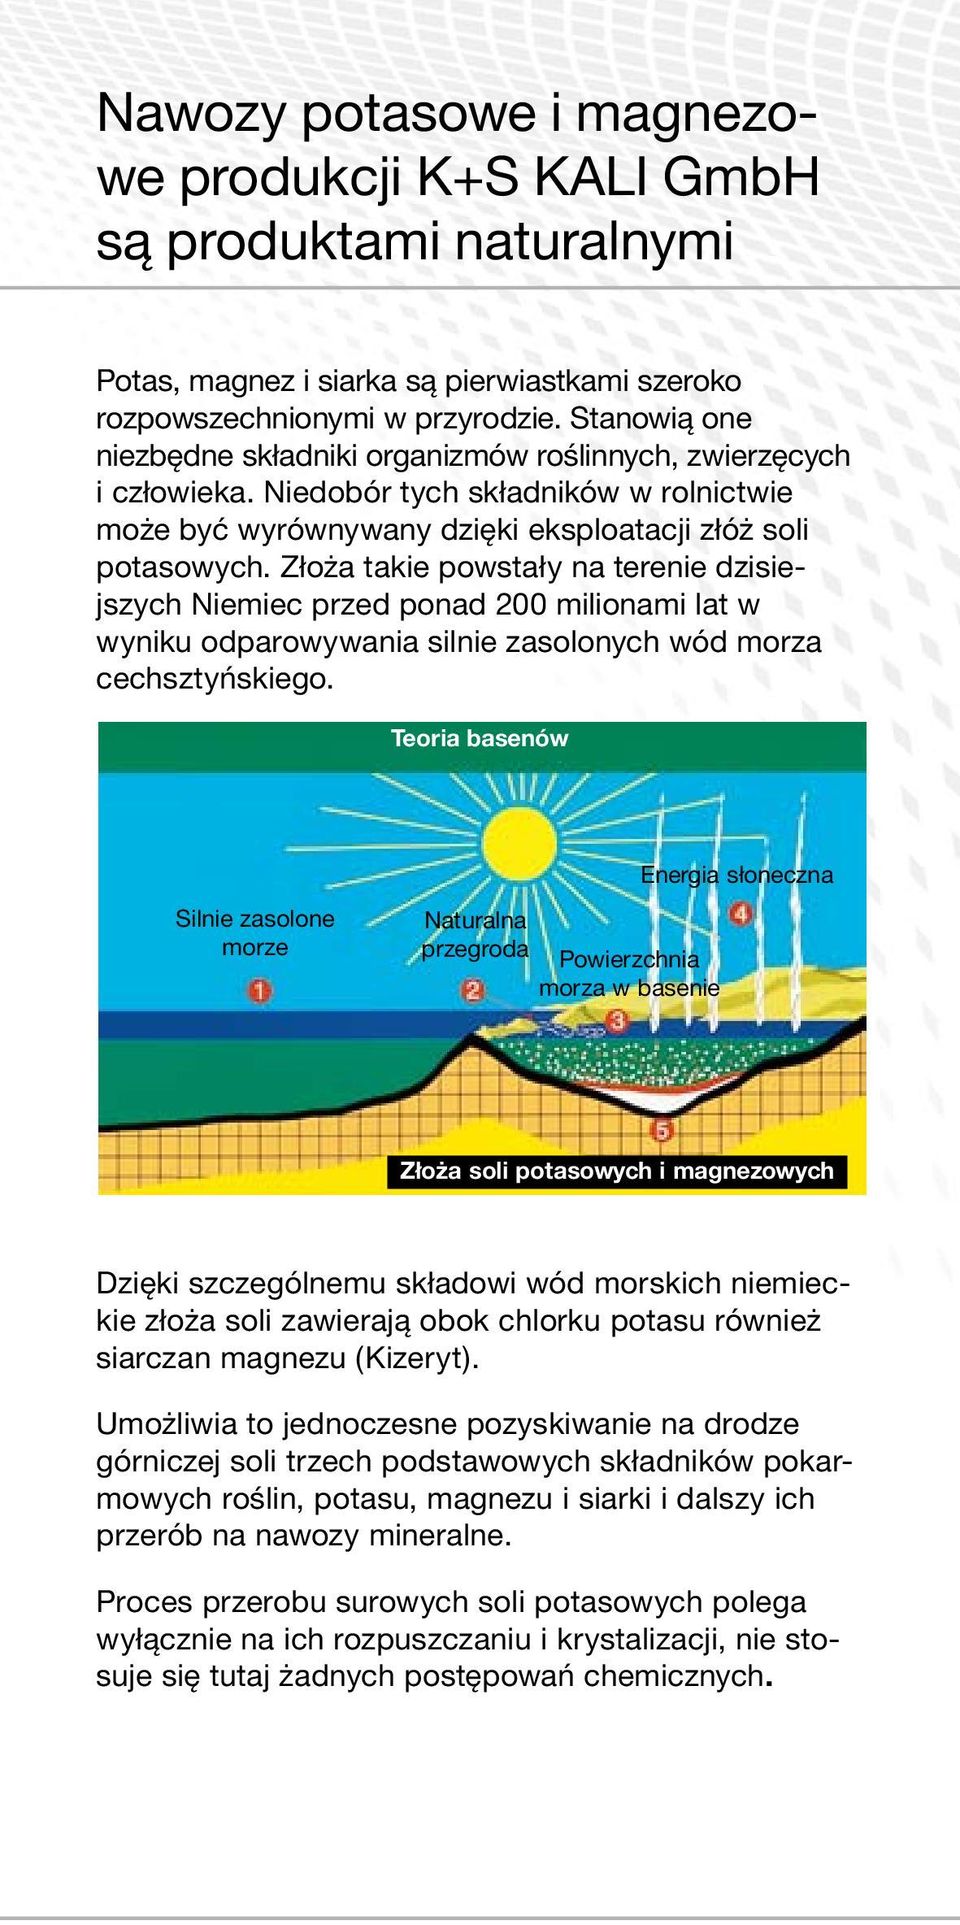 Złoża takie powstały na terenie dzisiejszych Niemiec przed ponad 200 milionami lat w wyniku odparowywania silnie zasolonych wód morza cechsztyńskiego.